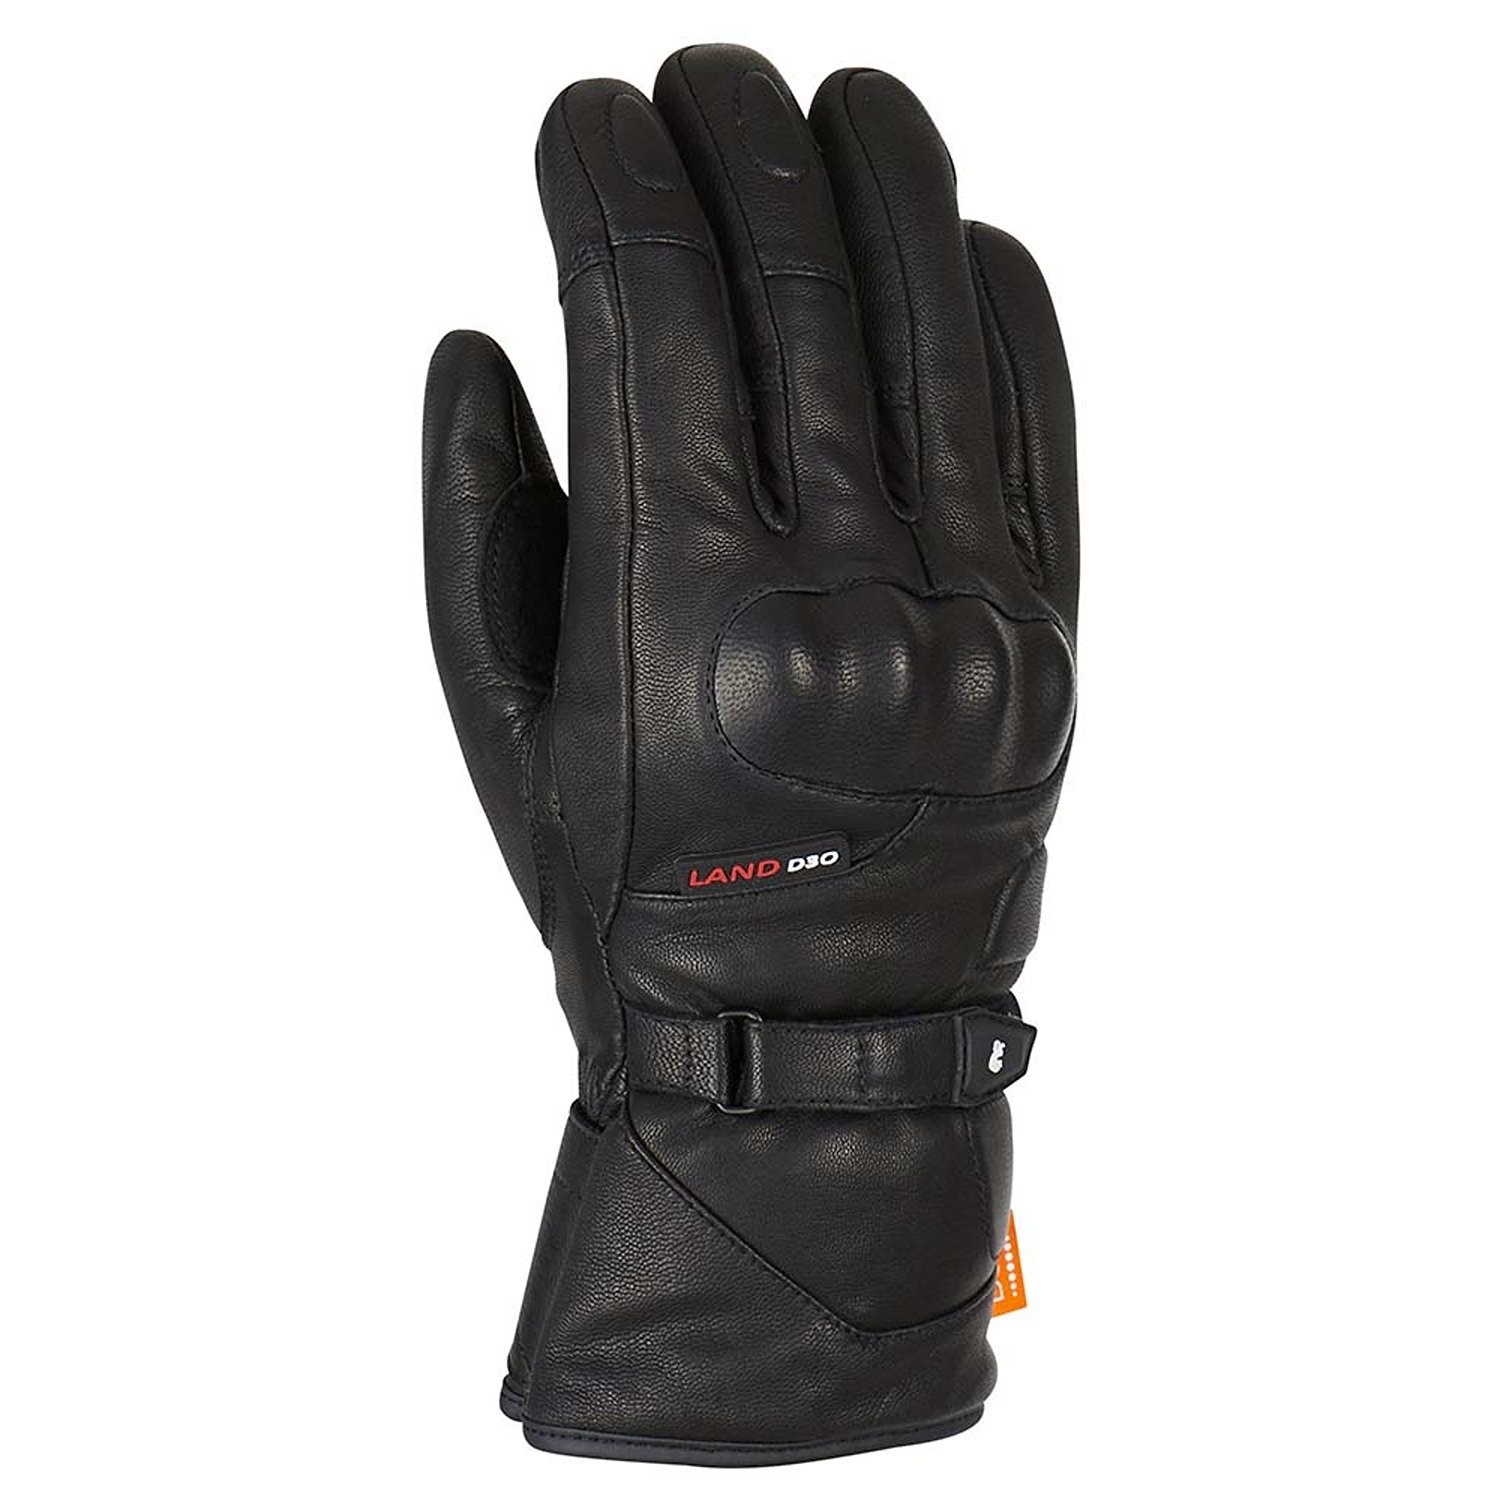 Image of Furygan Land DK D30 Gloves Black Size M EN